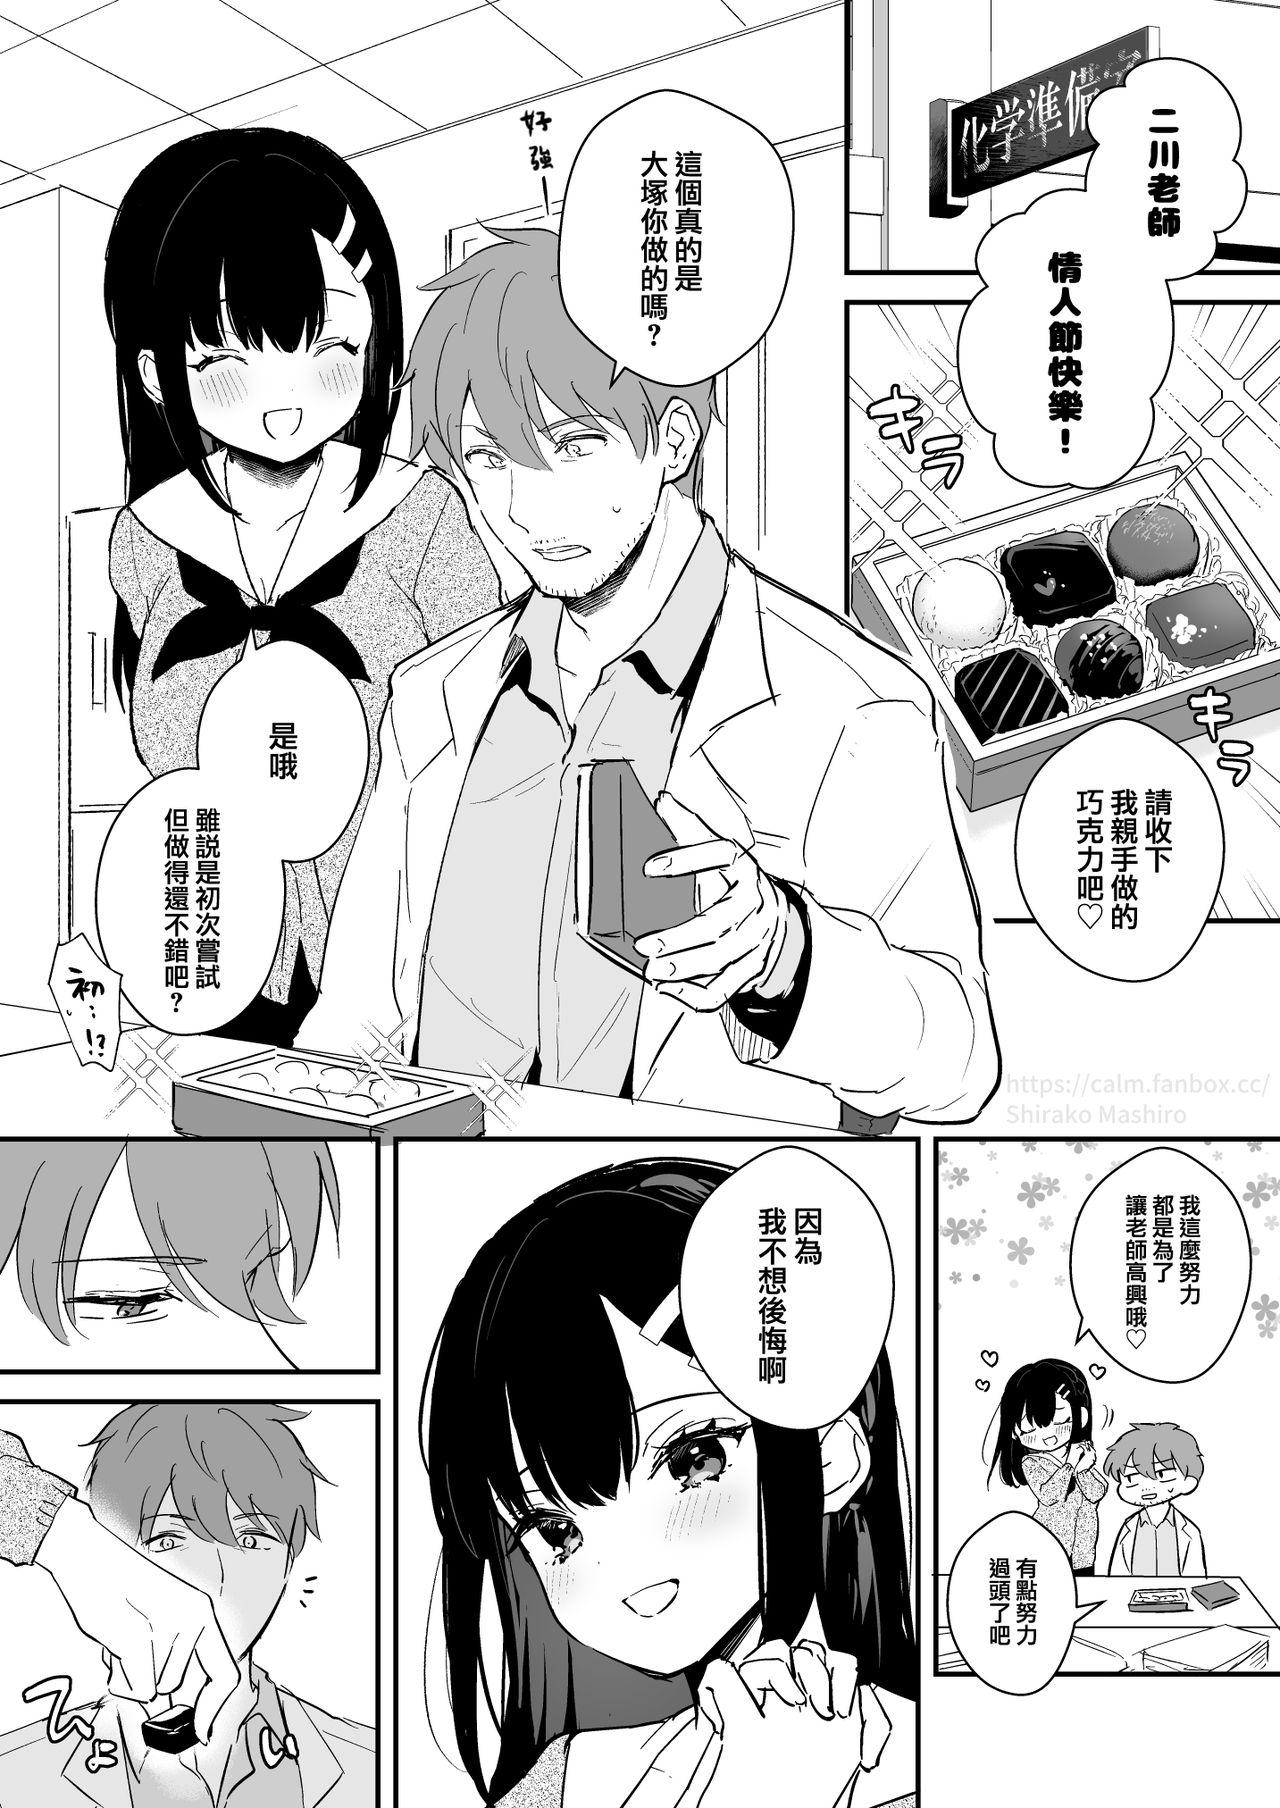 Girlnextdoor JK Miyako no Valentine Manga Foreplay - Page 2